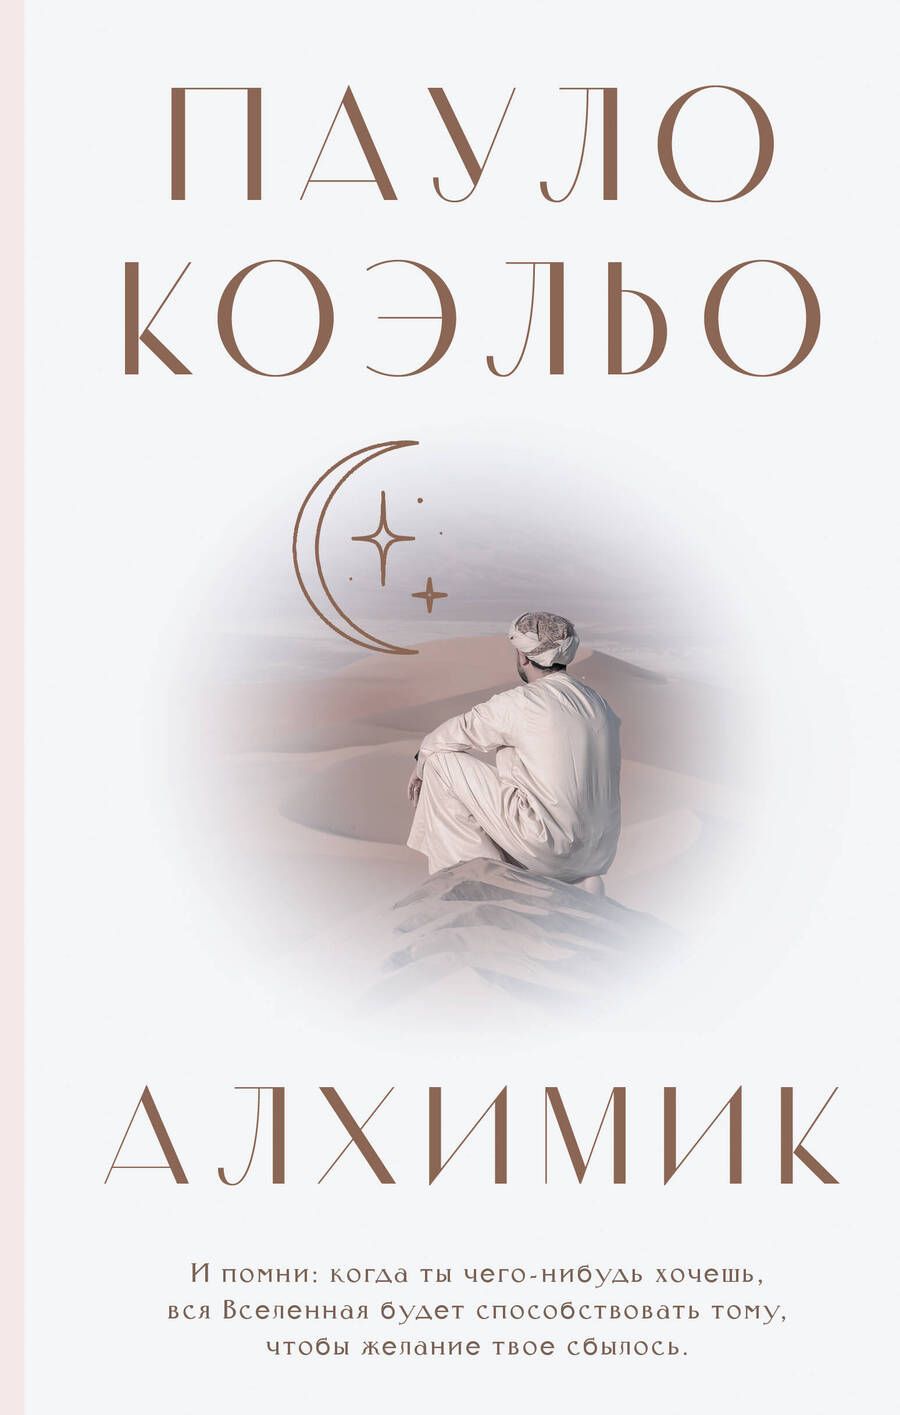 Обложка книги "Коэльо: Алхимик"